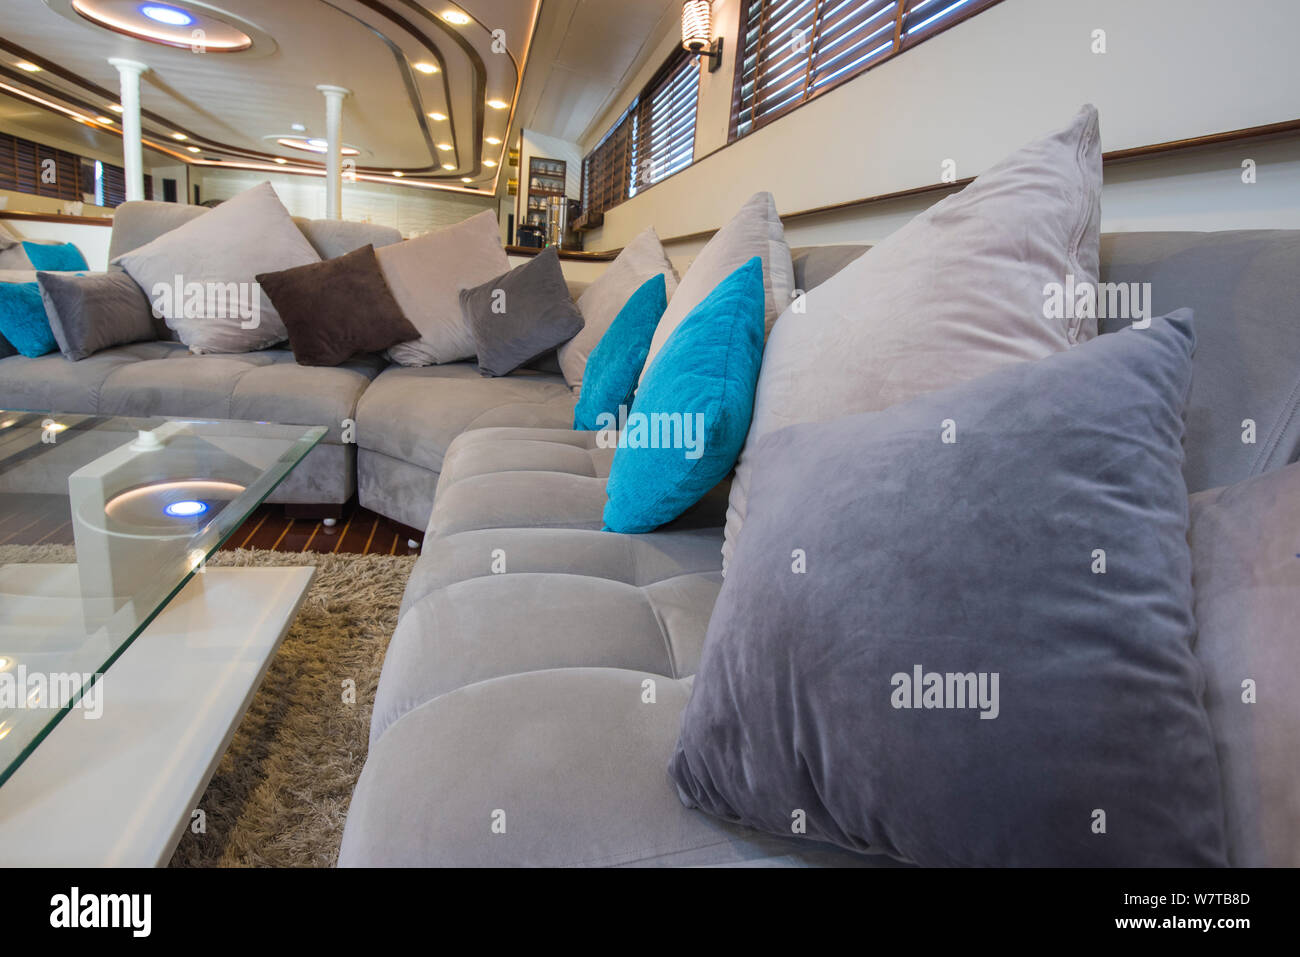 Interior design arredamento arredamento del salone in un grande lussuoso yacht a motore Foto Stock